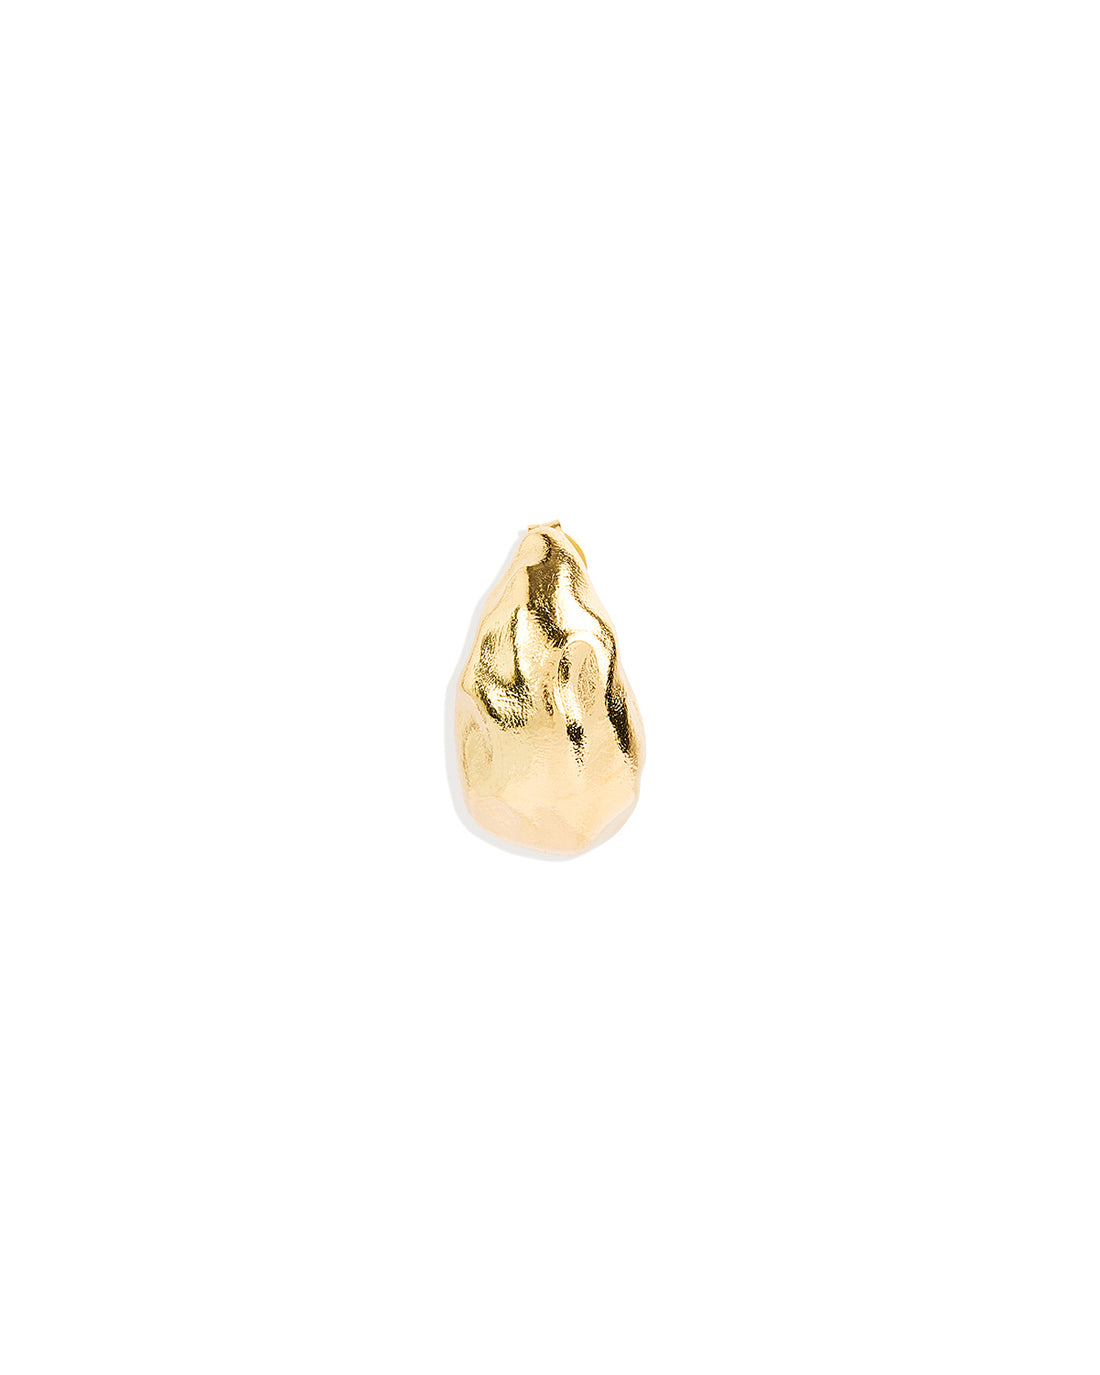 Gold Wild Heart Large Earrings Earrings by By Charlotte - Prae Store